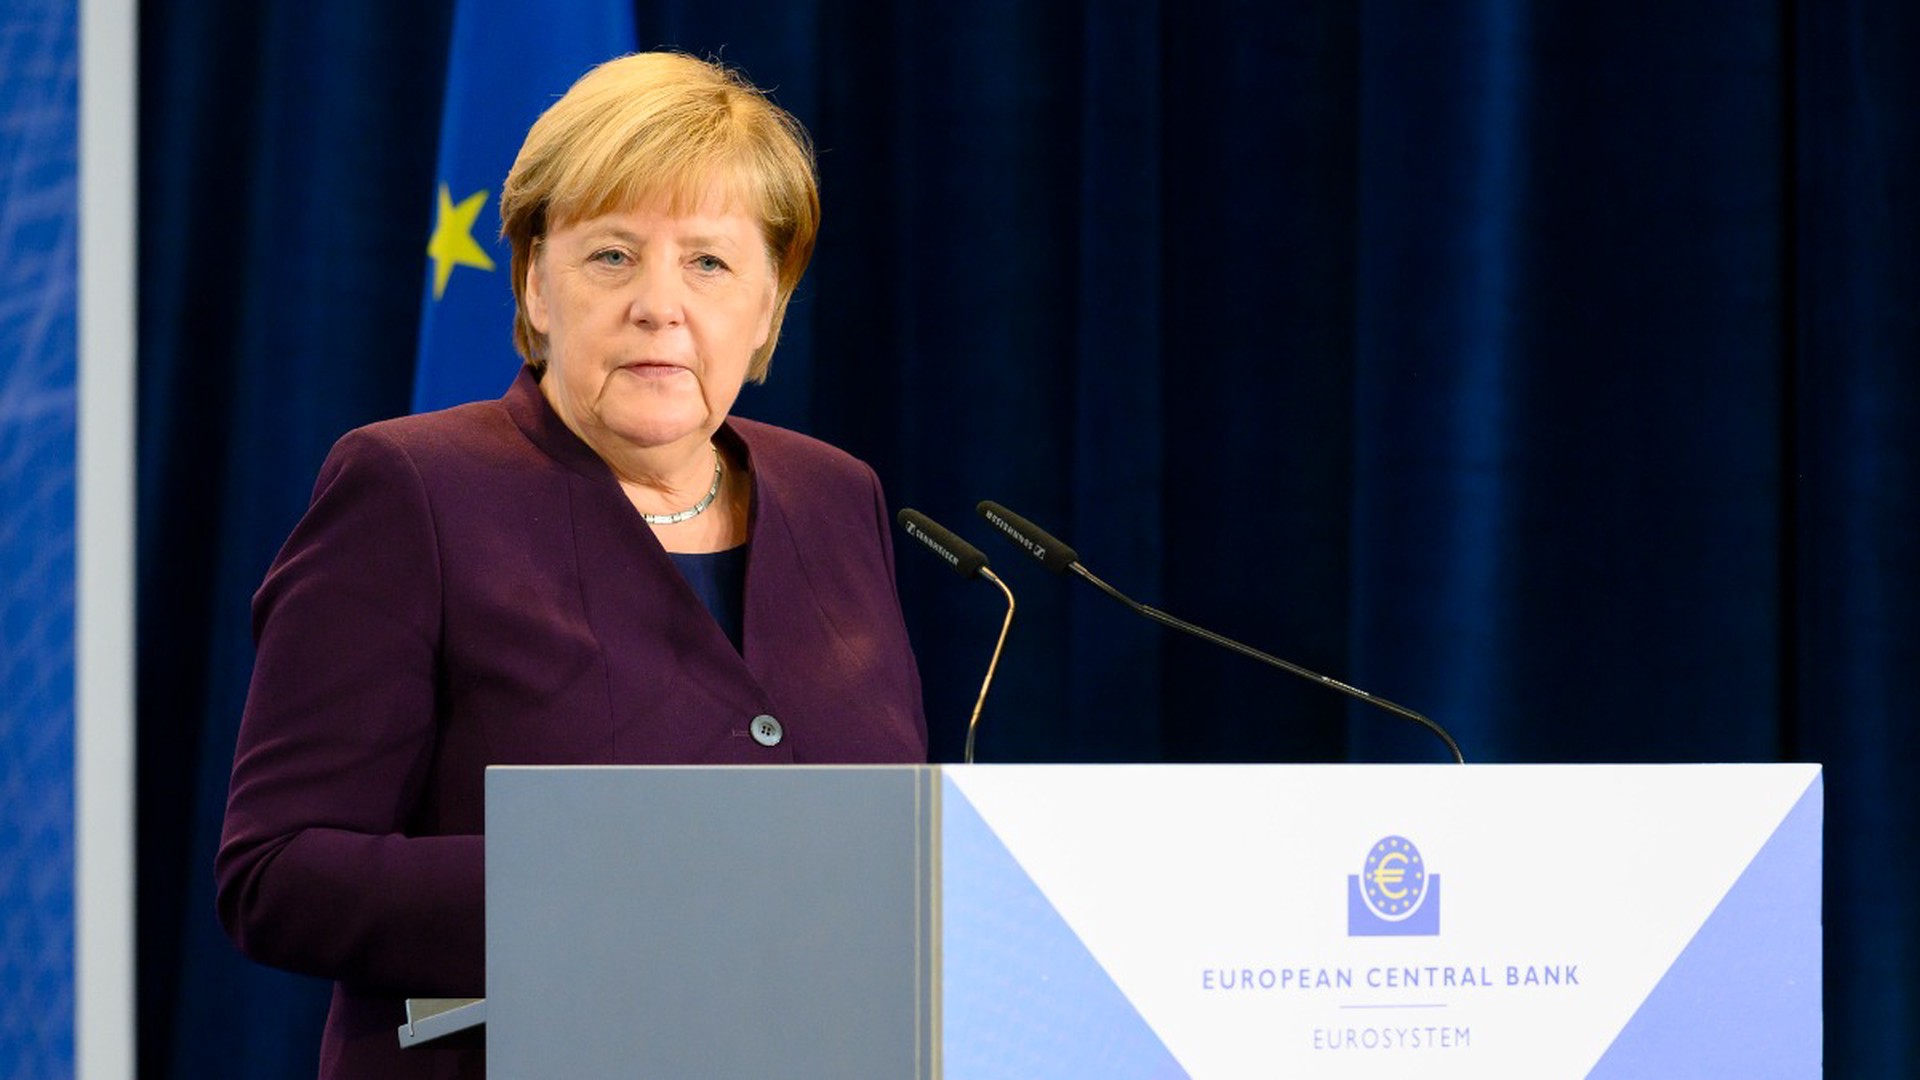 Меркель: Я не против русской культуры, но Нетребко к себе снова не пригласила бы